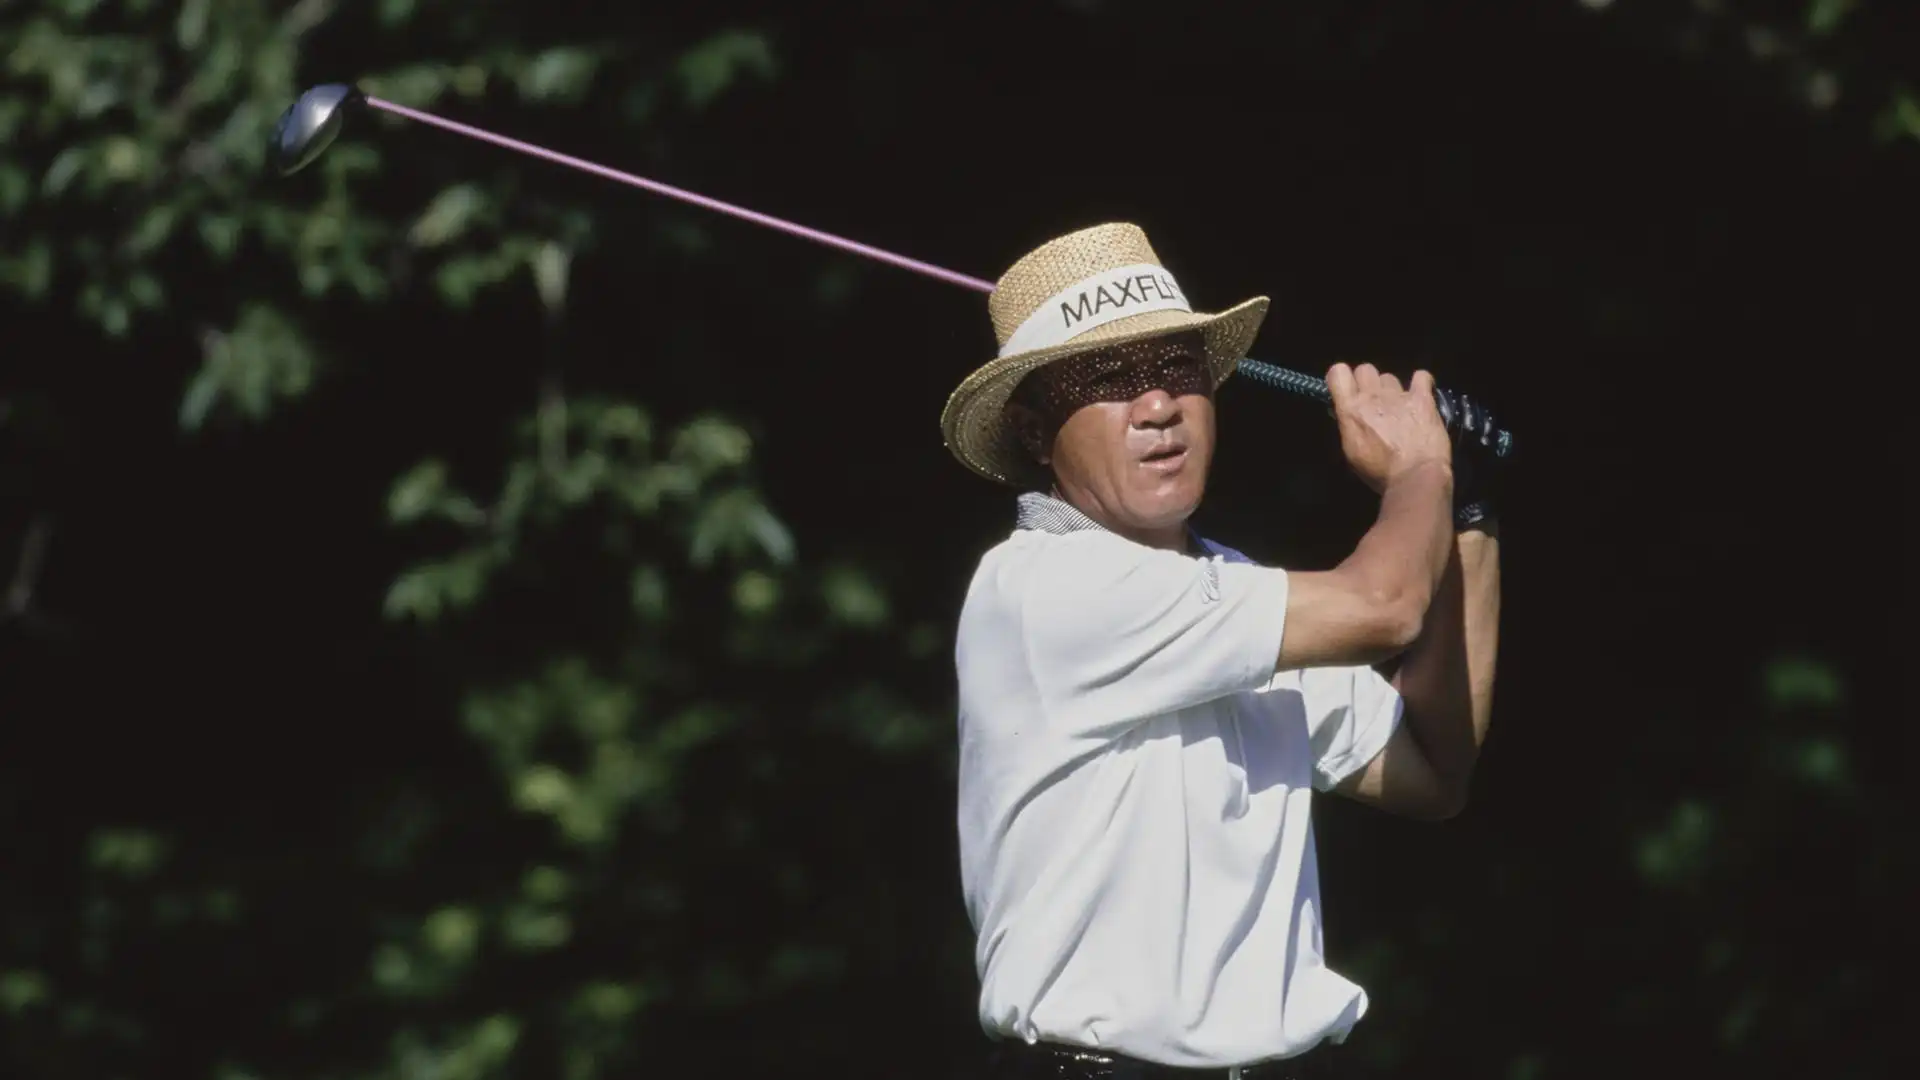 Isao Aoki: patrimonio stimato 5 milioni di dollari. Membro del World Golf Hall of Fame, oltre 80 tornei vinti in carriera